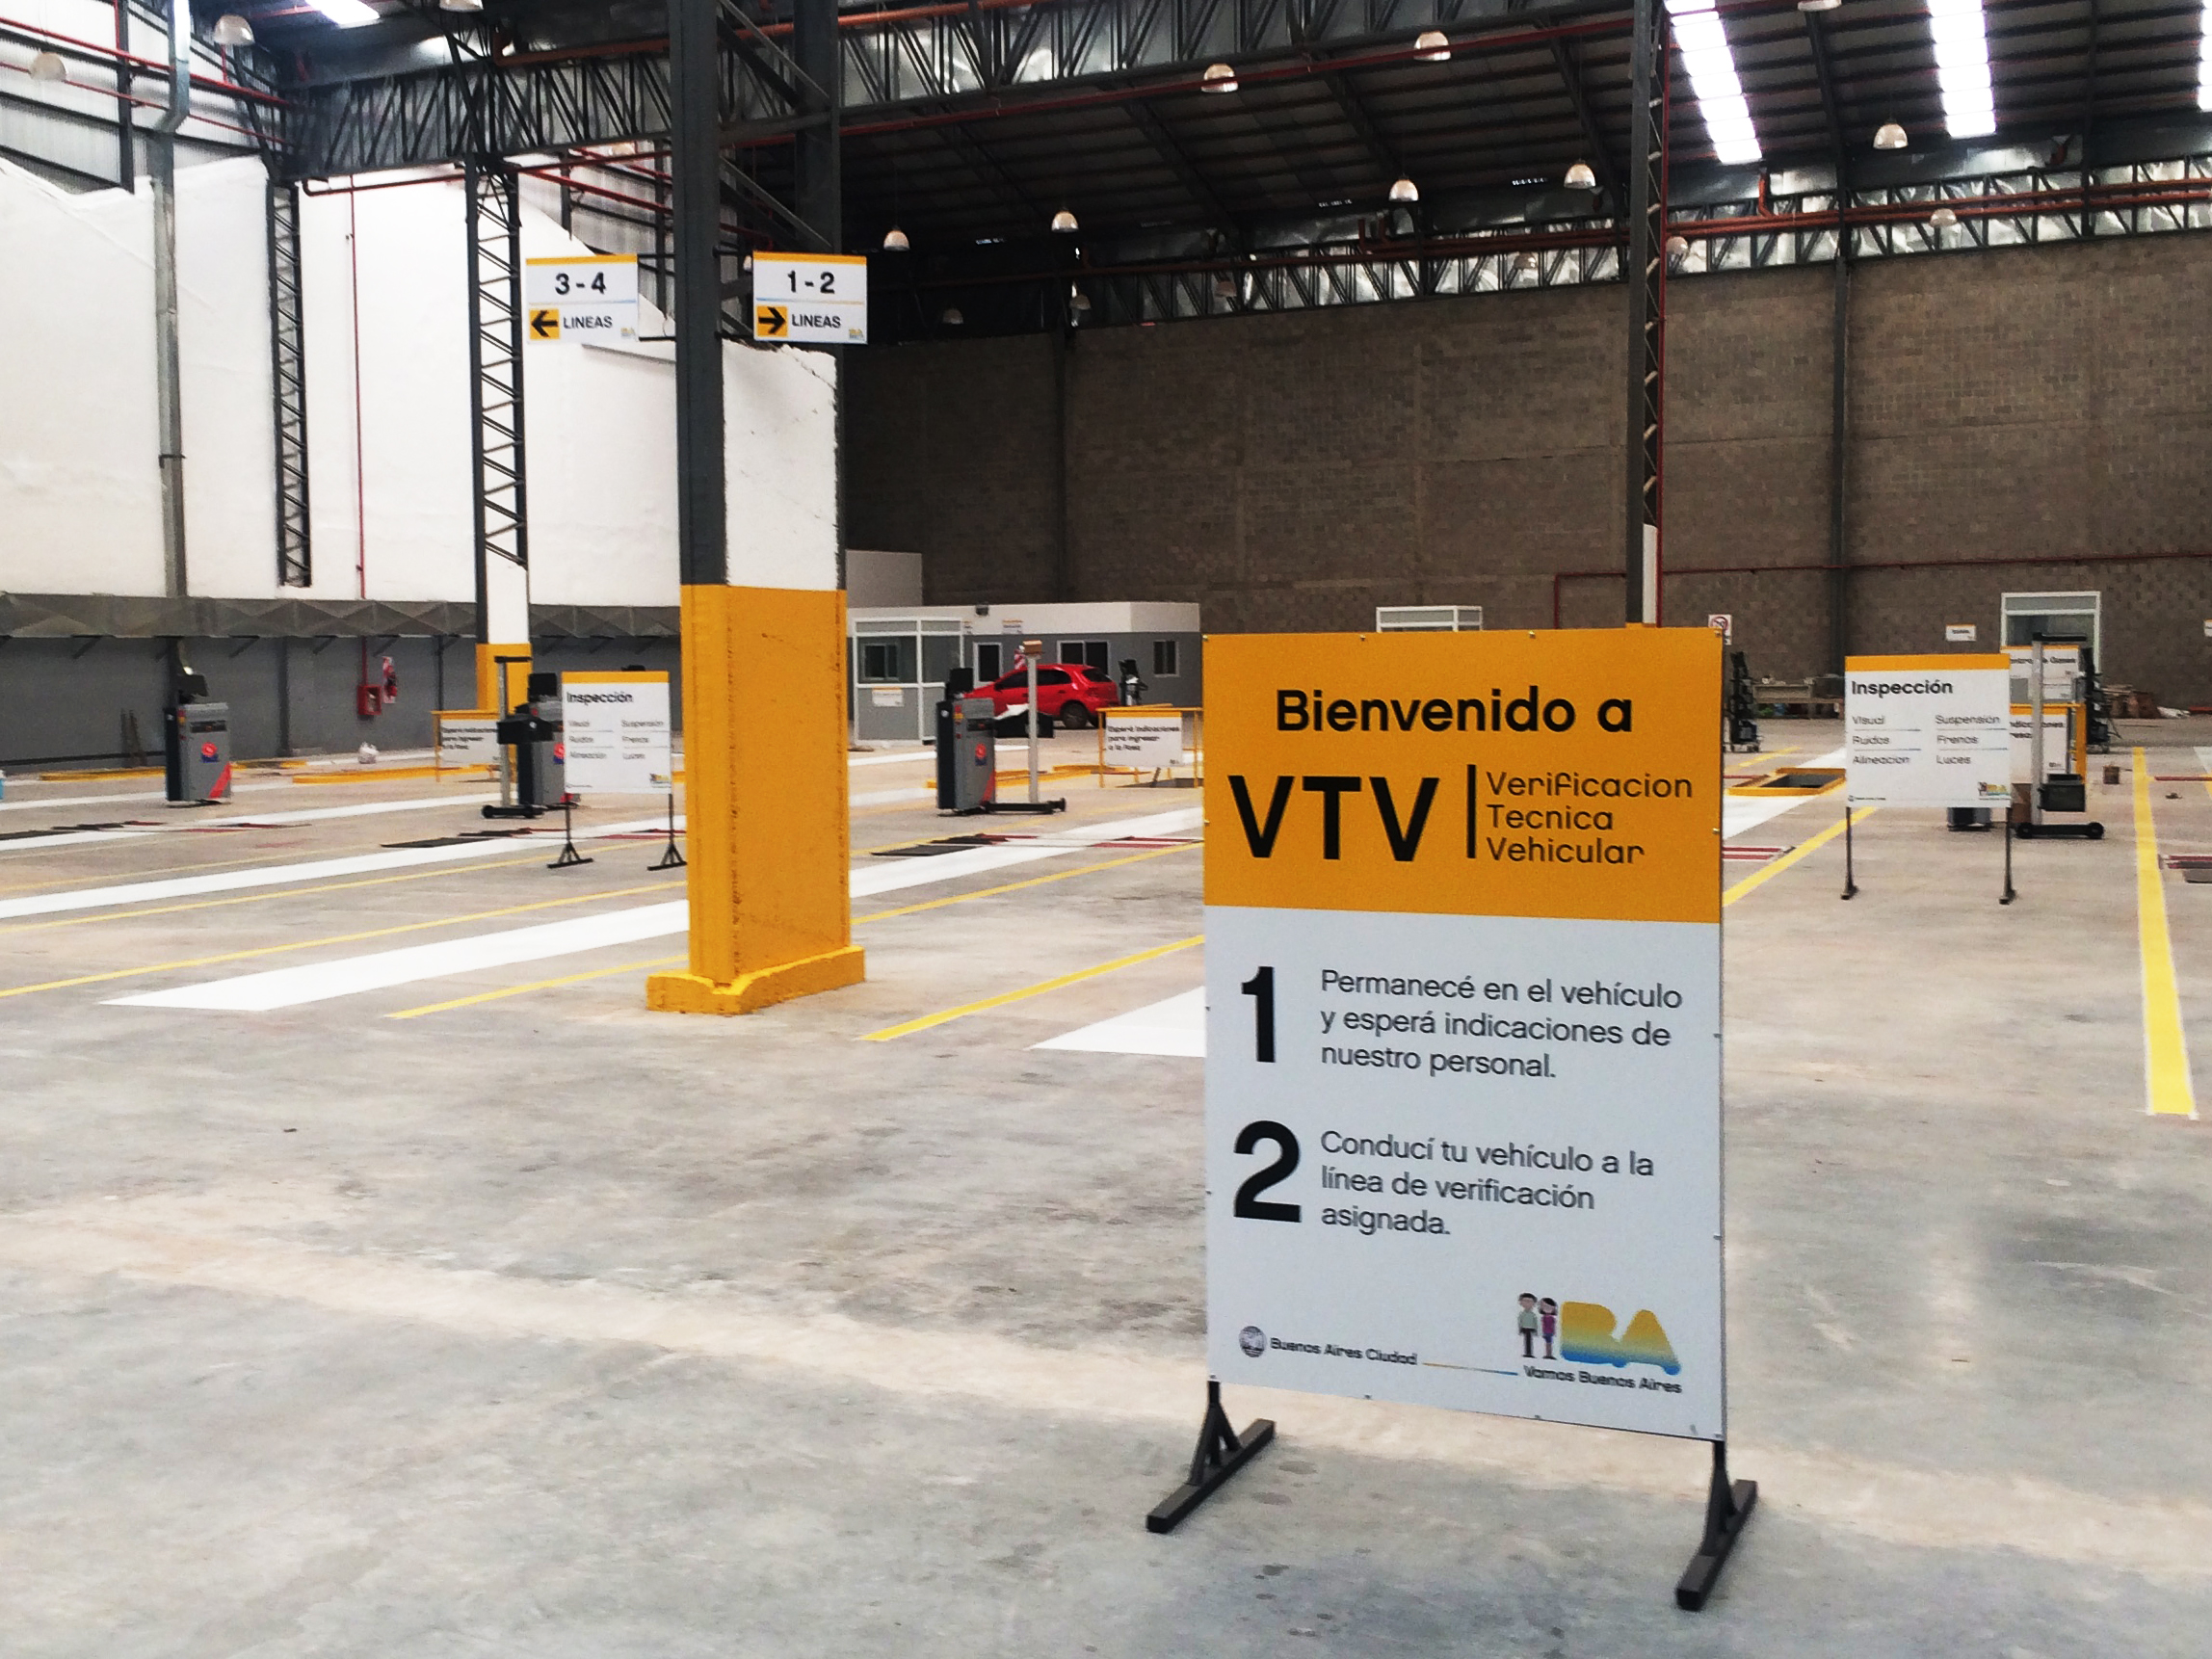 En febrero tendrán que realizar la VTV los vehículos con patentes terminadas en 2 (dos)